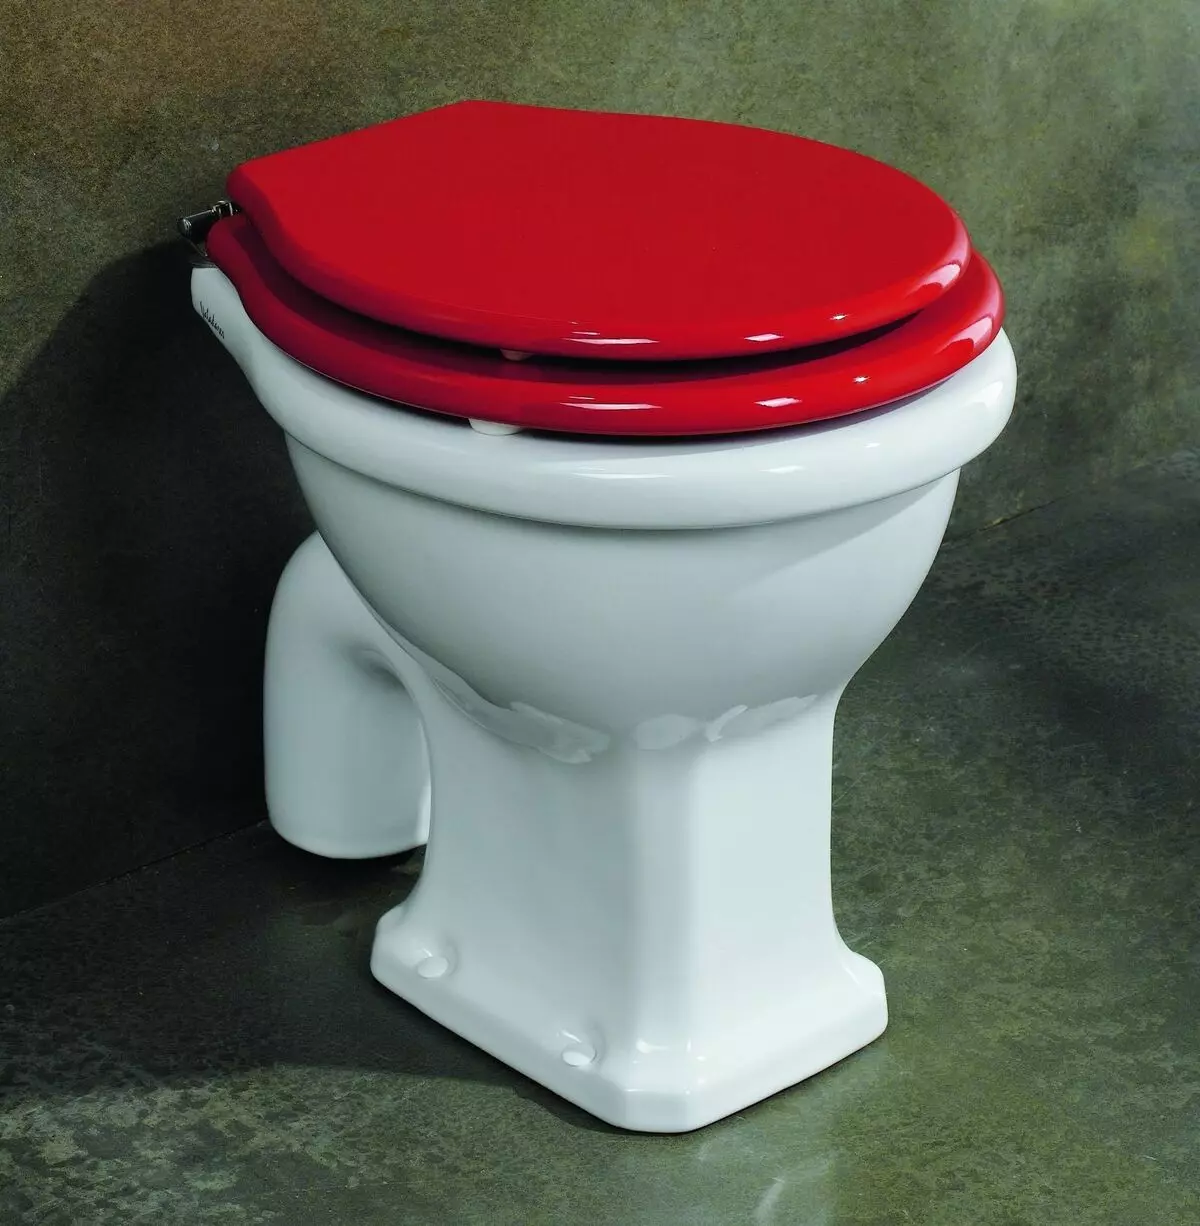 Toaletná misa s šikmým vydaním: importované ložiská jednotkaz-kompaktné, edícia roh, káblové kompaktné WC a ďalšie modely so šikmým vydaním 10523_19